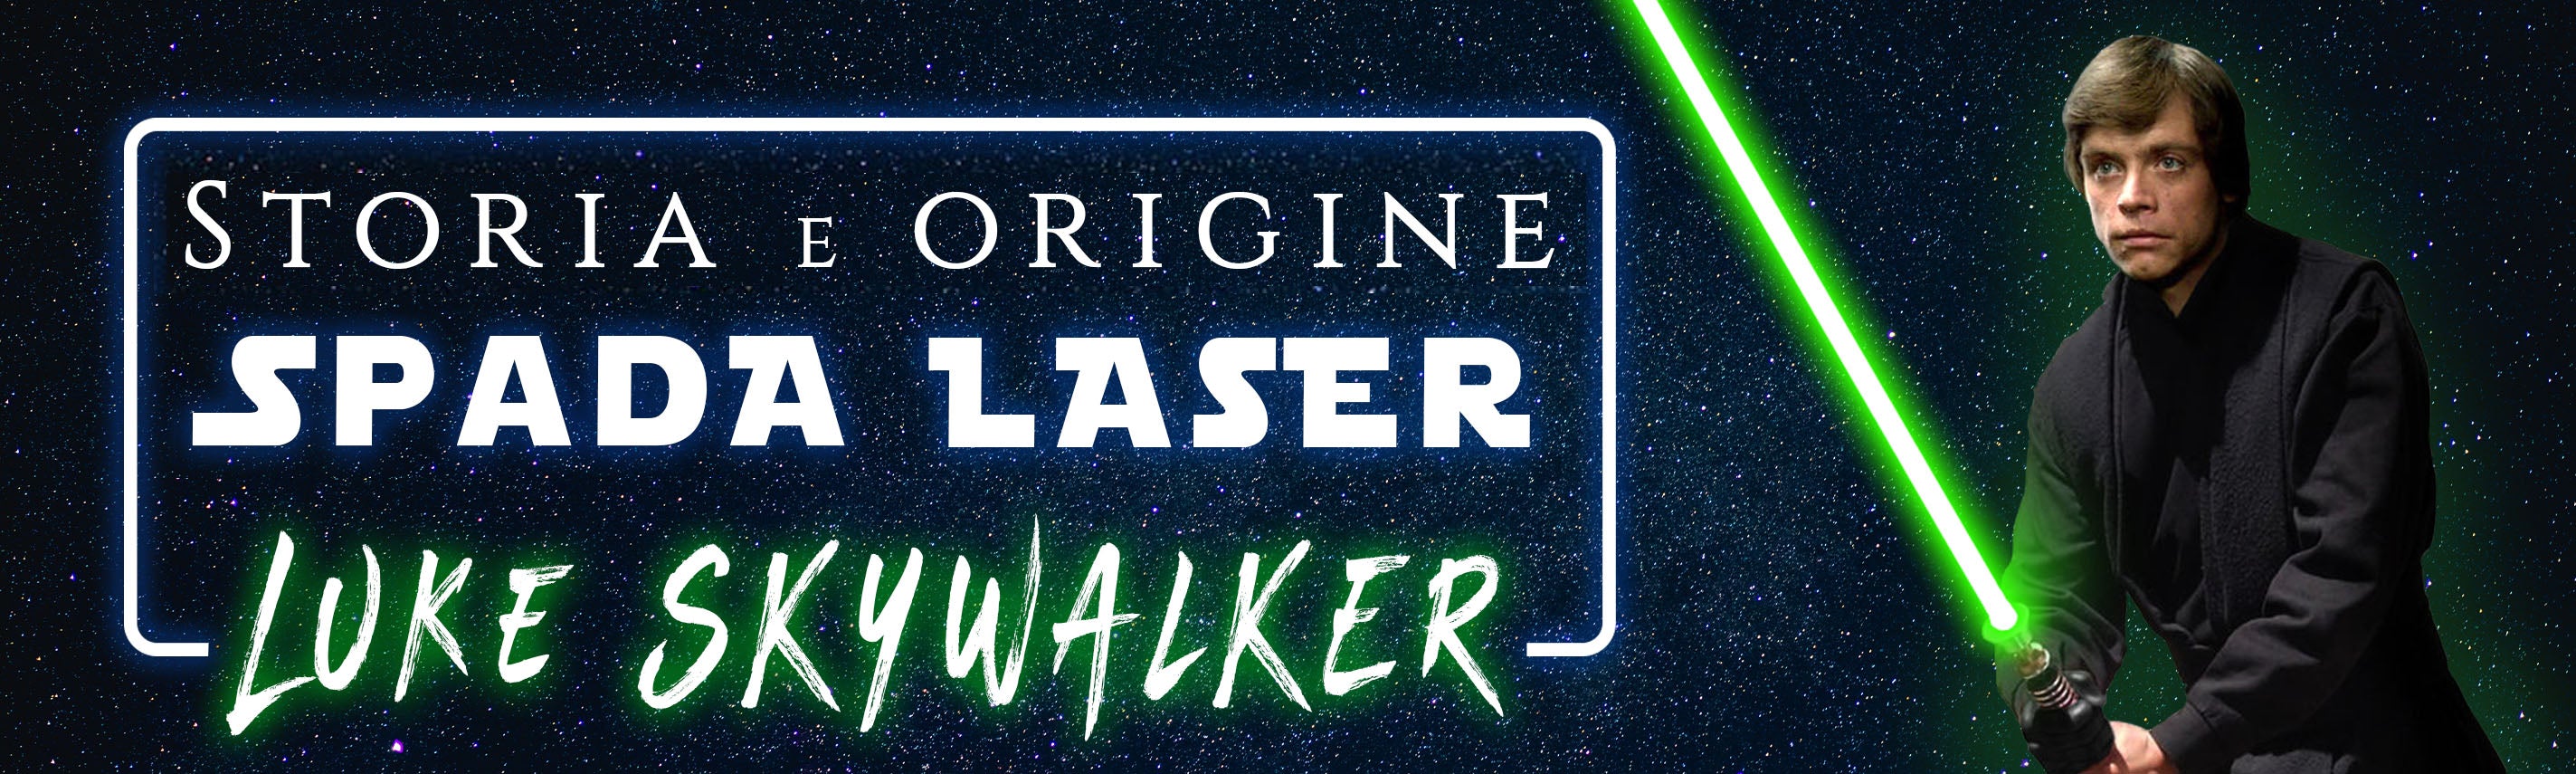 La Spada Laser Verde di Luke Skywalker